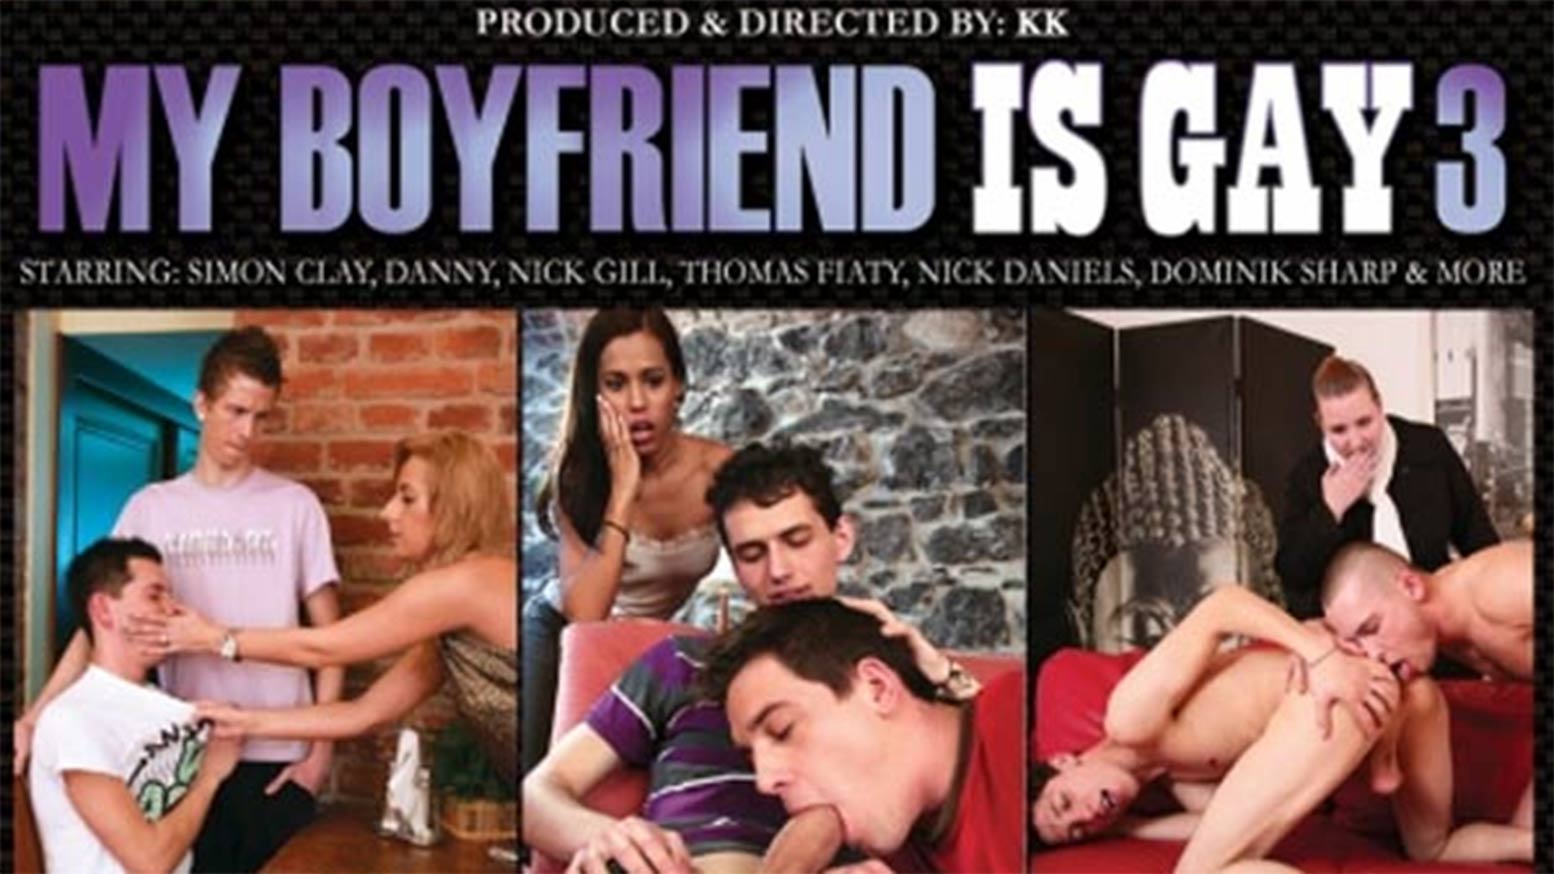 My Boyfriend is Gay 3, Scene 1